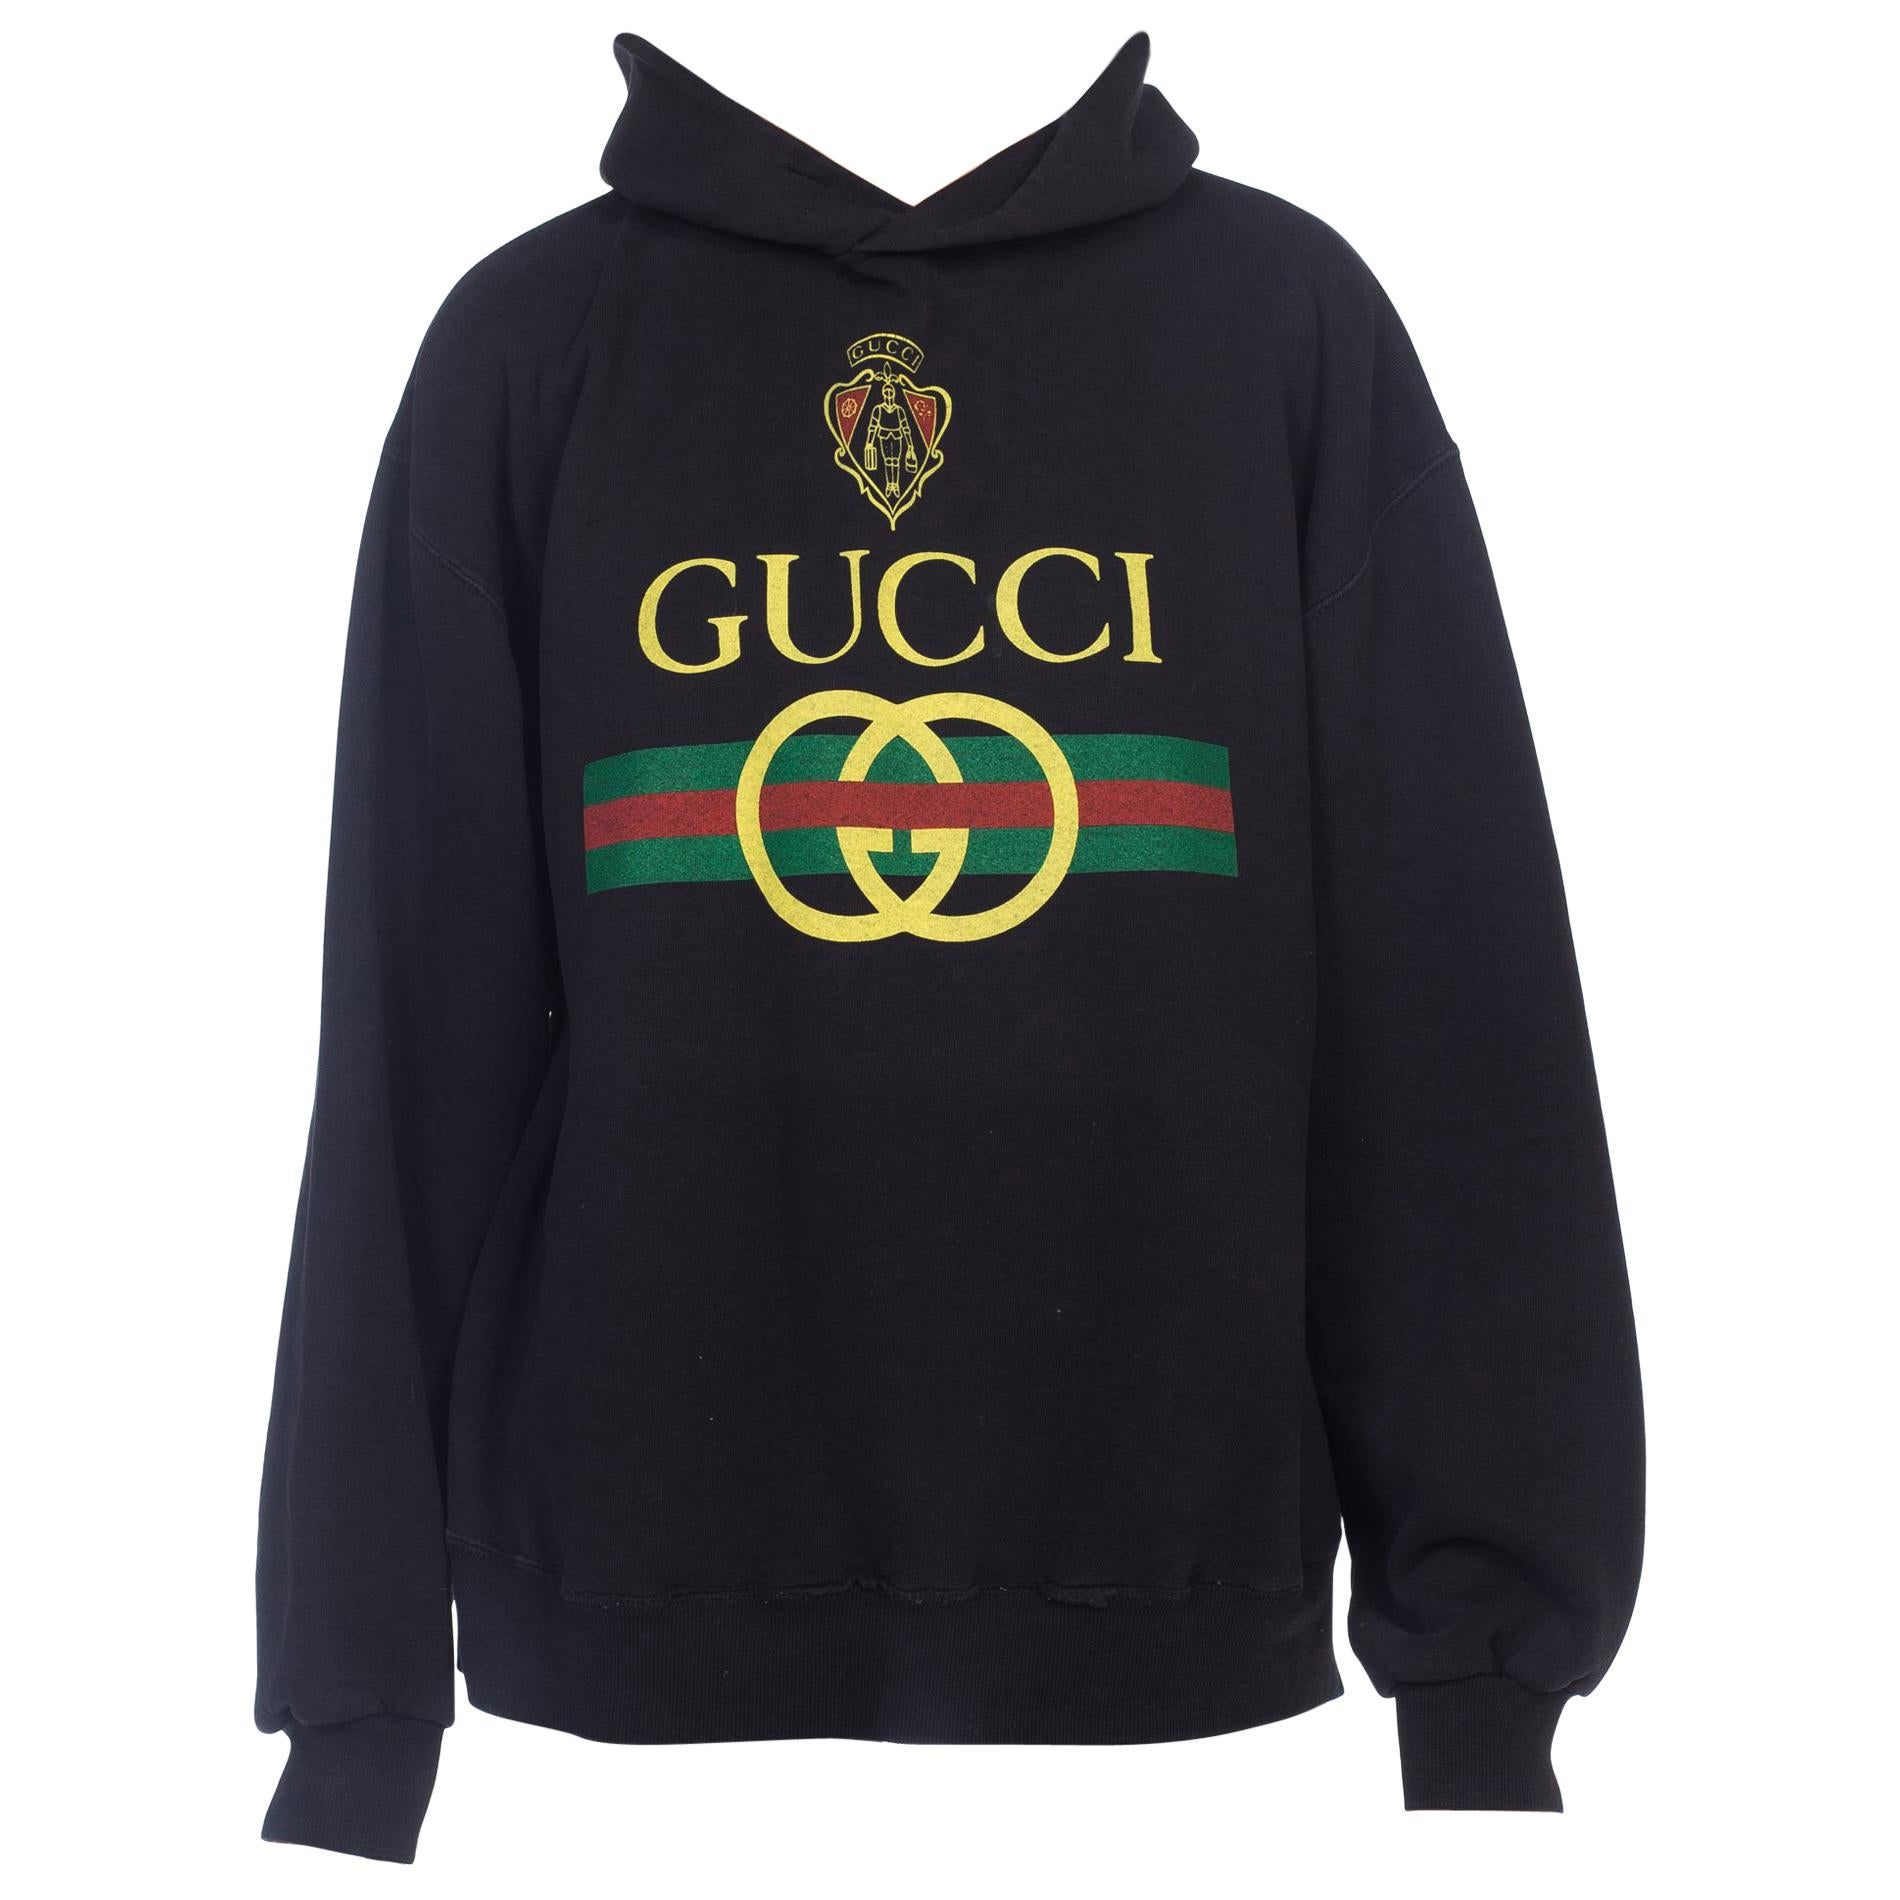 Bootleg Gucci - For Sale on 1stDibs | gucci bootleg, bootleg gucci shirt, bootleg  gucci sweatshirt